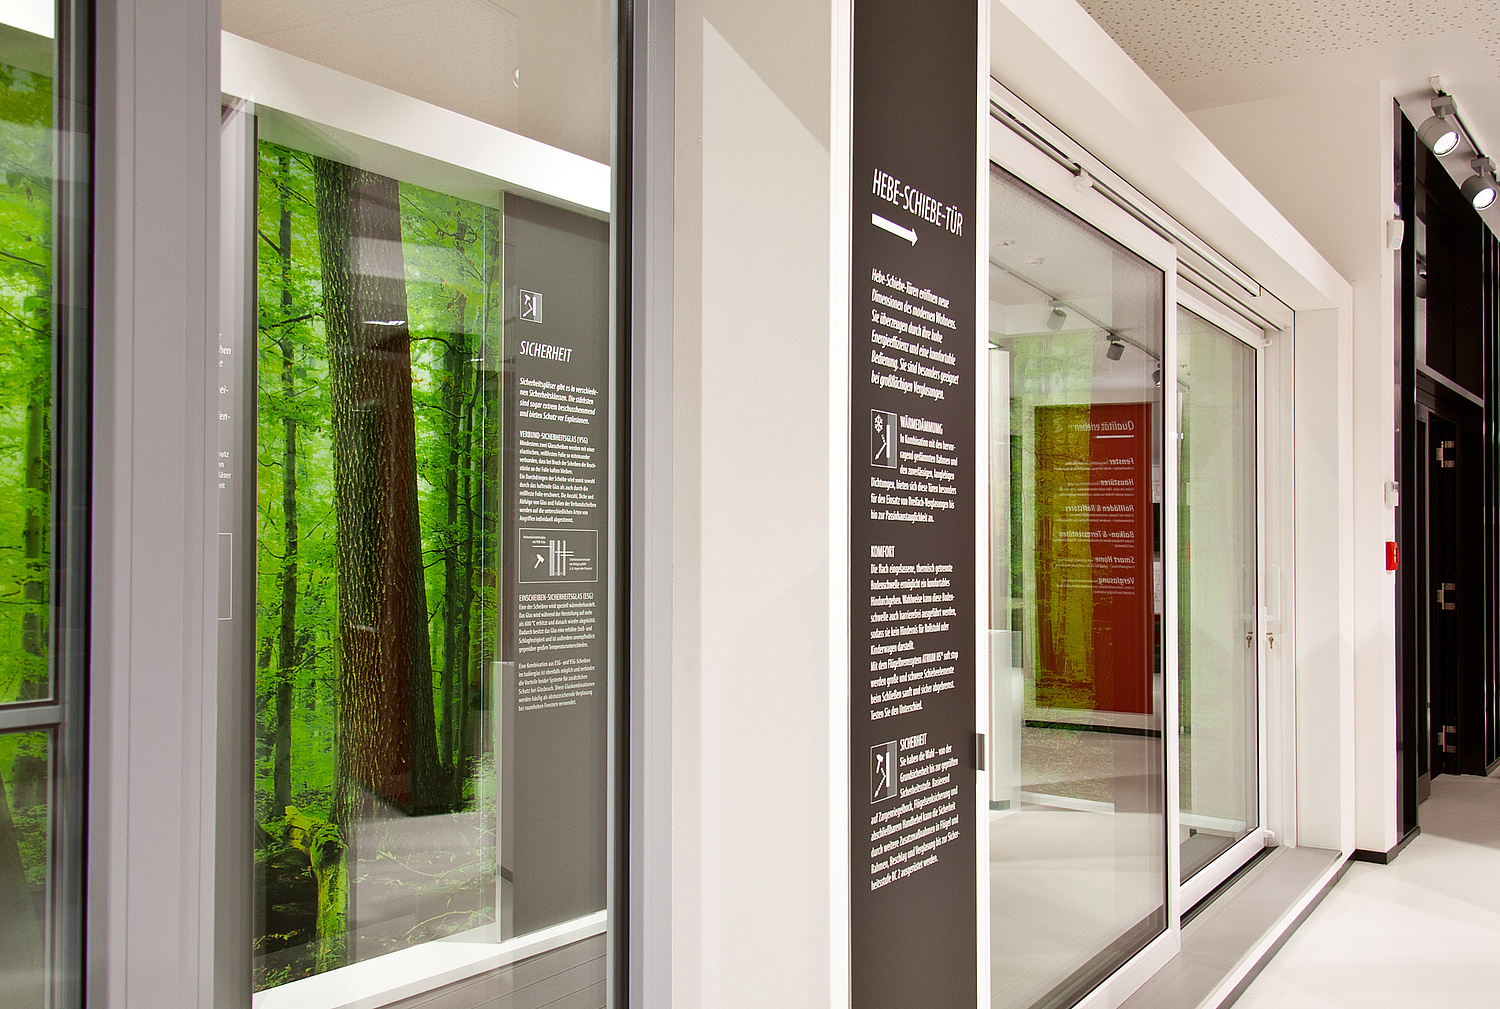 Die Ausstellungsmodule integrieren ausgewählte Türmodelle, deren Funktionsweisen von den Besuchern vor Ort getestet werden können. (© Papenfuss | Atelier)